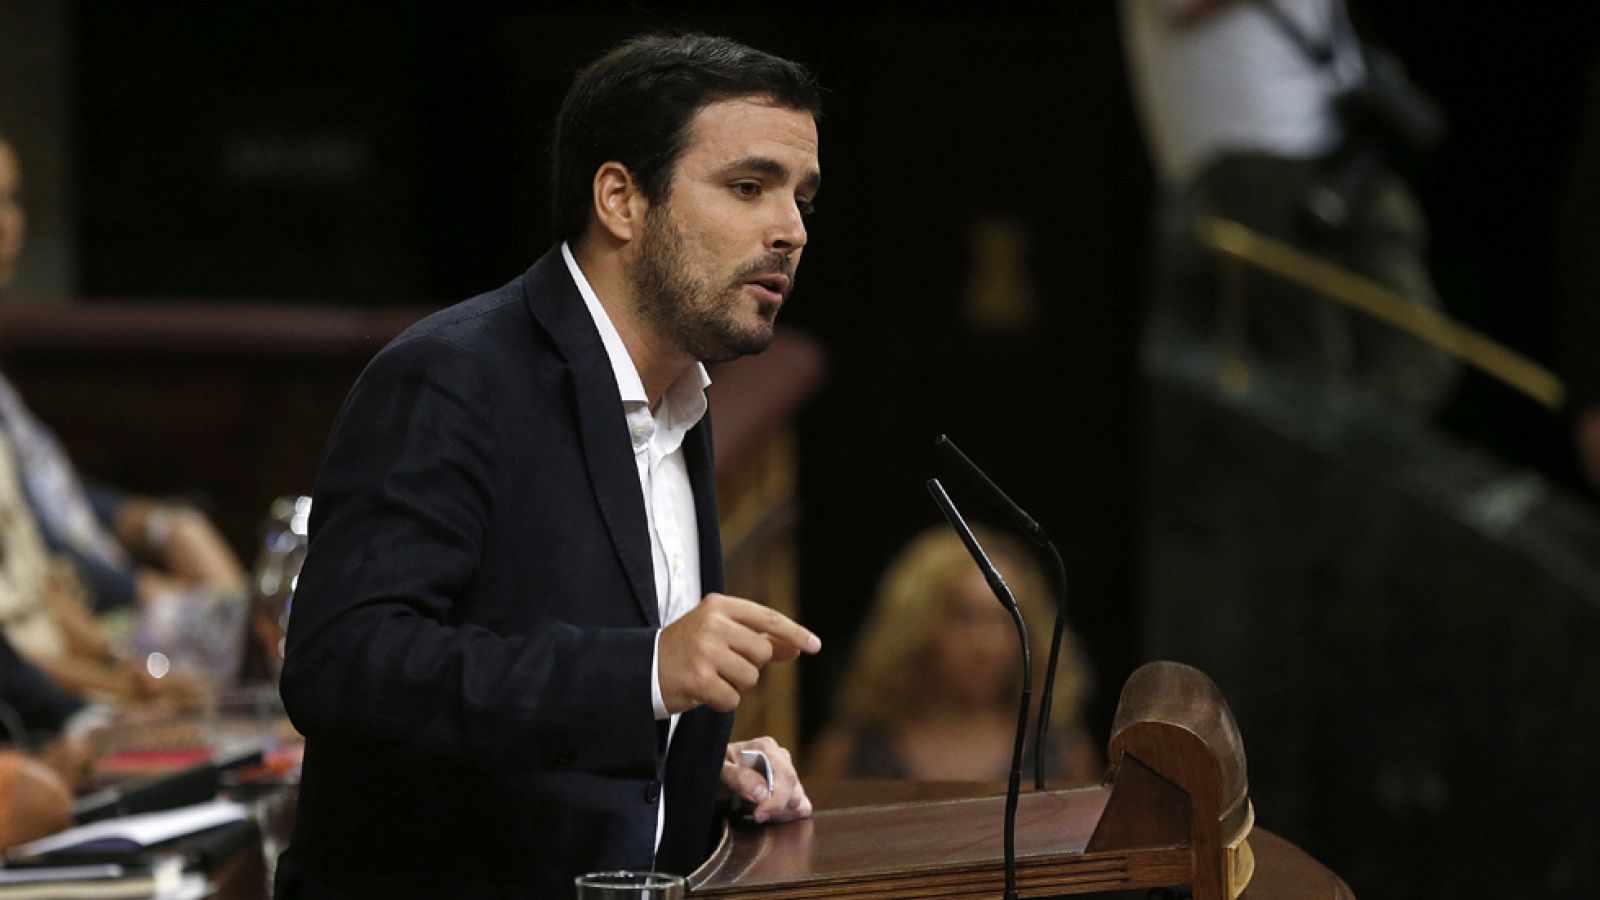 Alberto Garzón califica a Rajoy de ser el "representante de una organización corrupta"